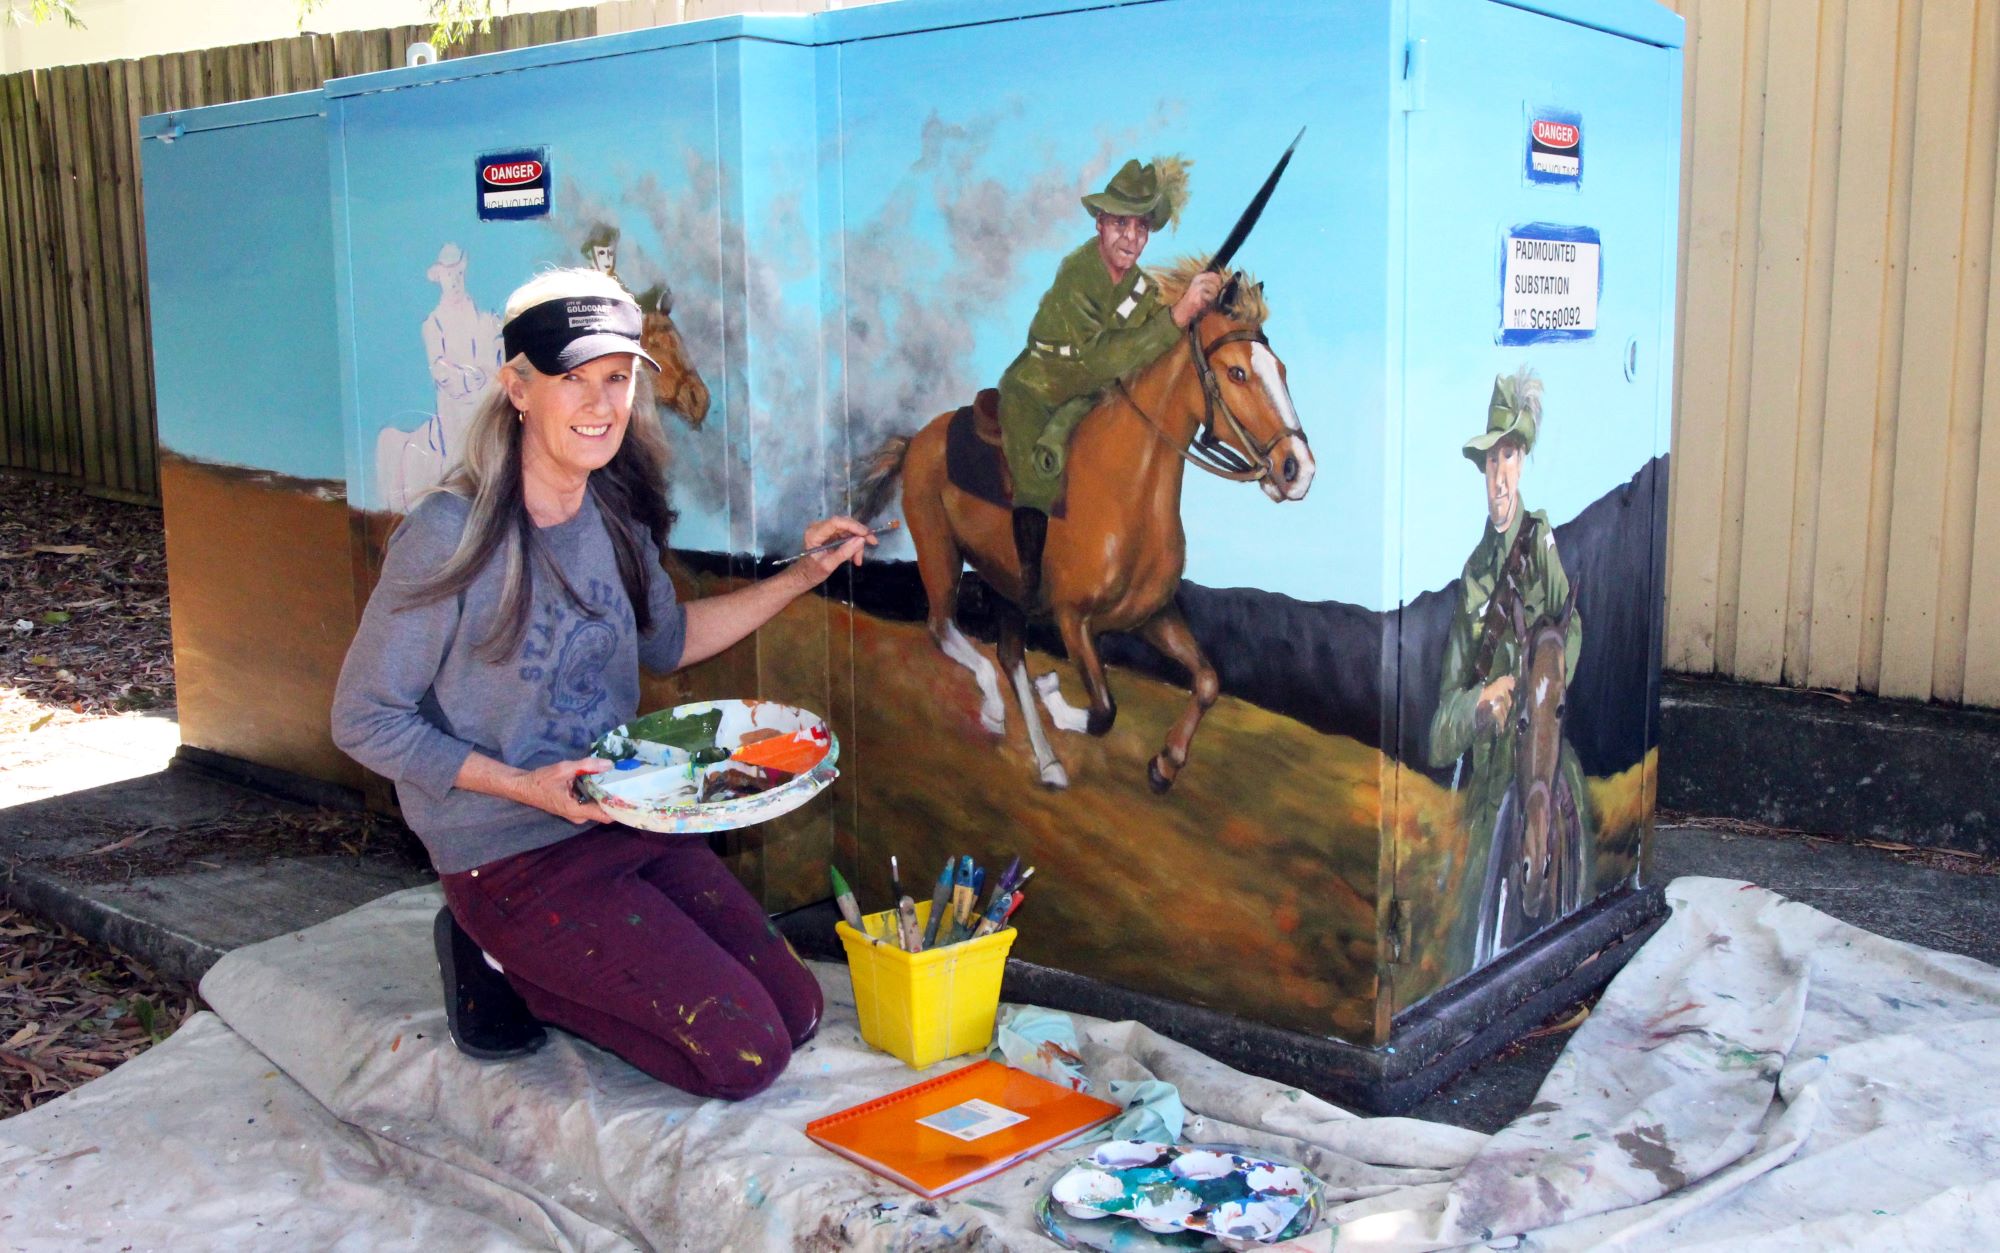 An artist painting an electricity asset